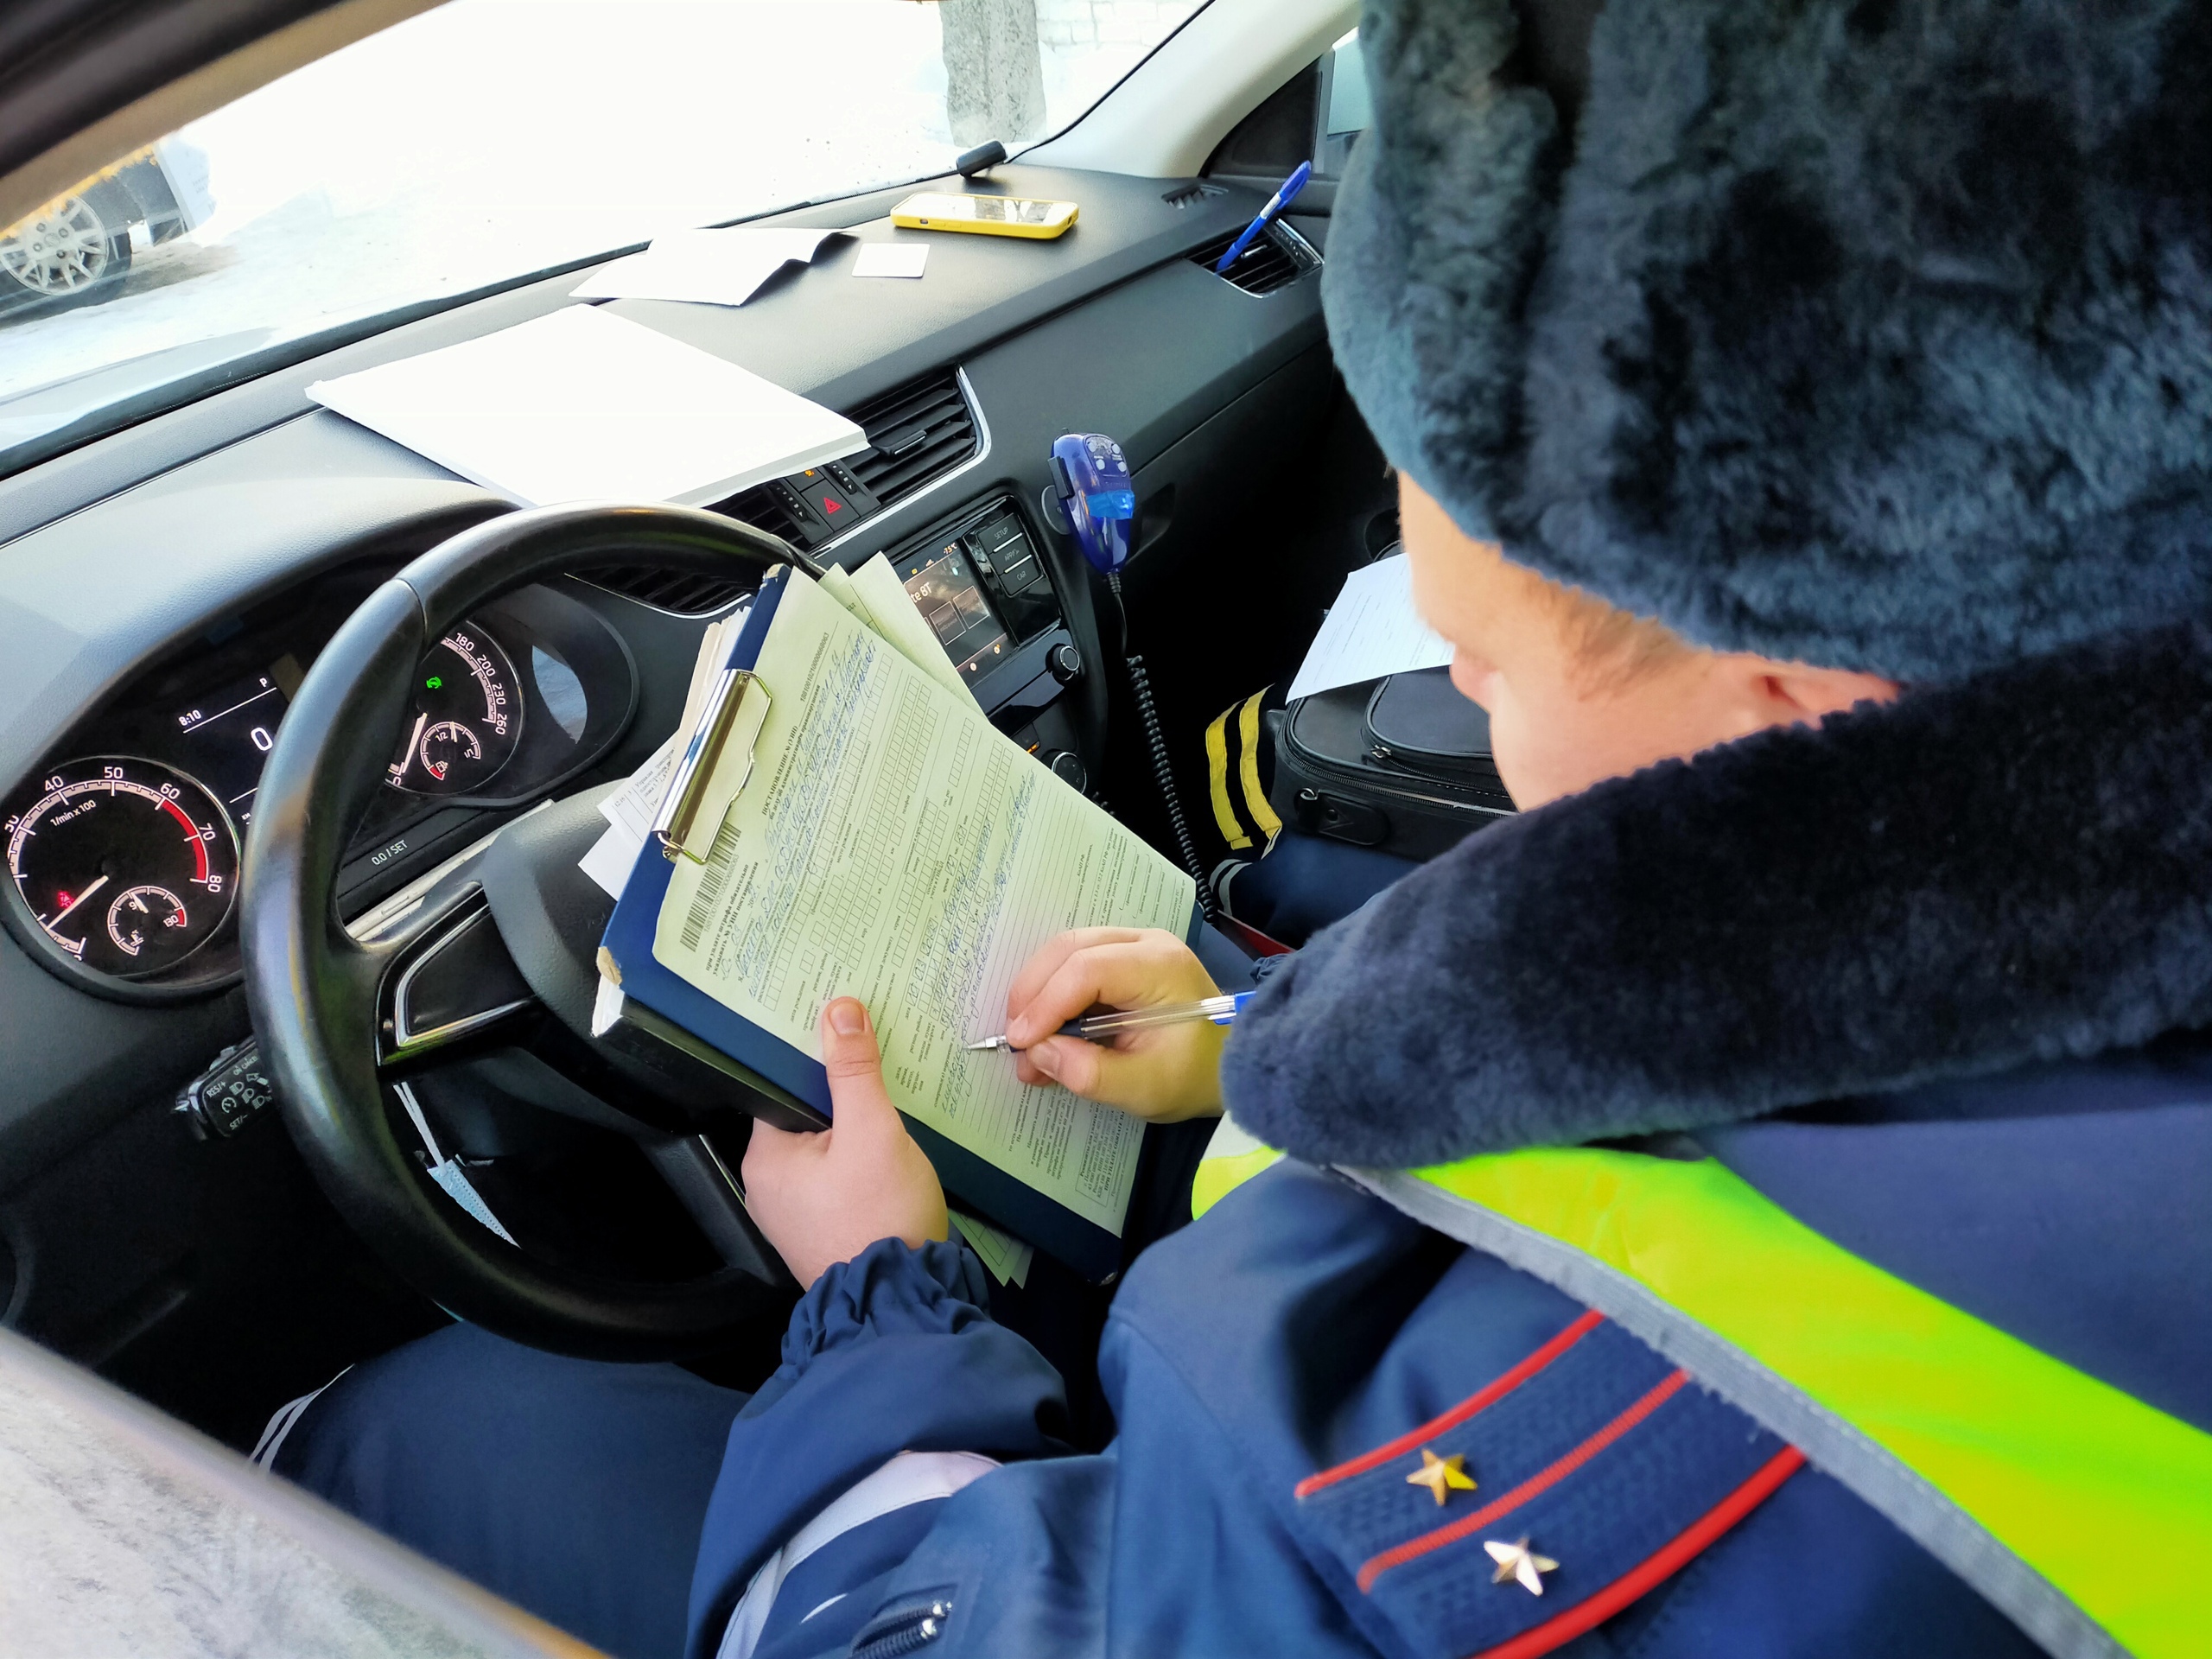 В Петрозаводске оштрафовали 9 водителей, рискнувших жизнями детей